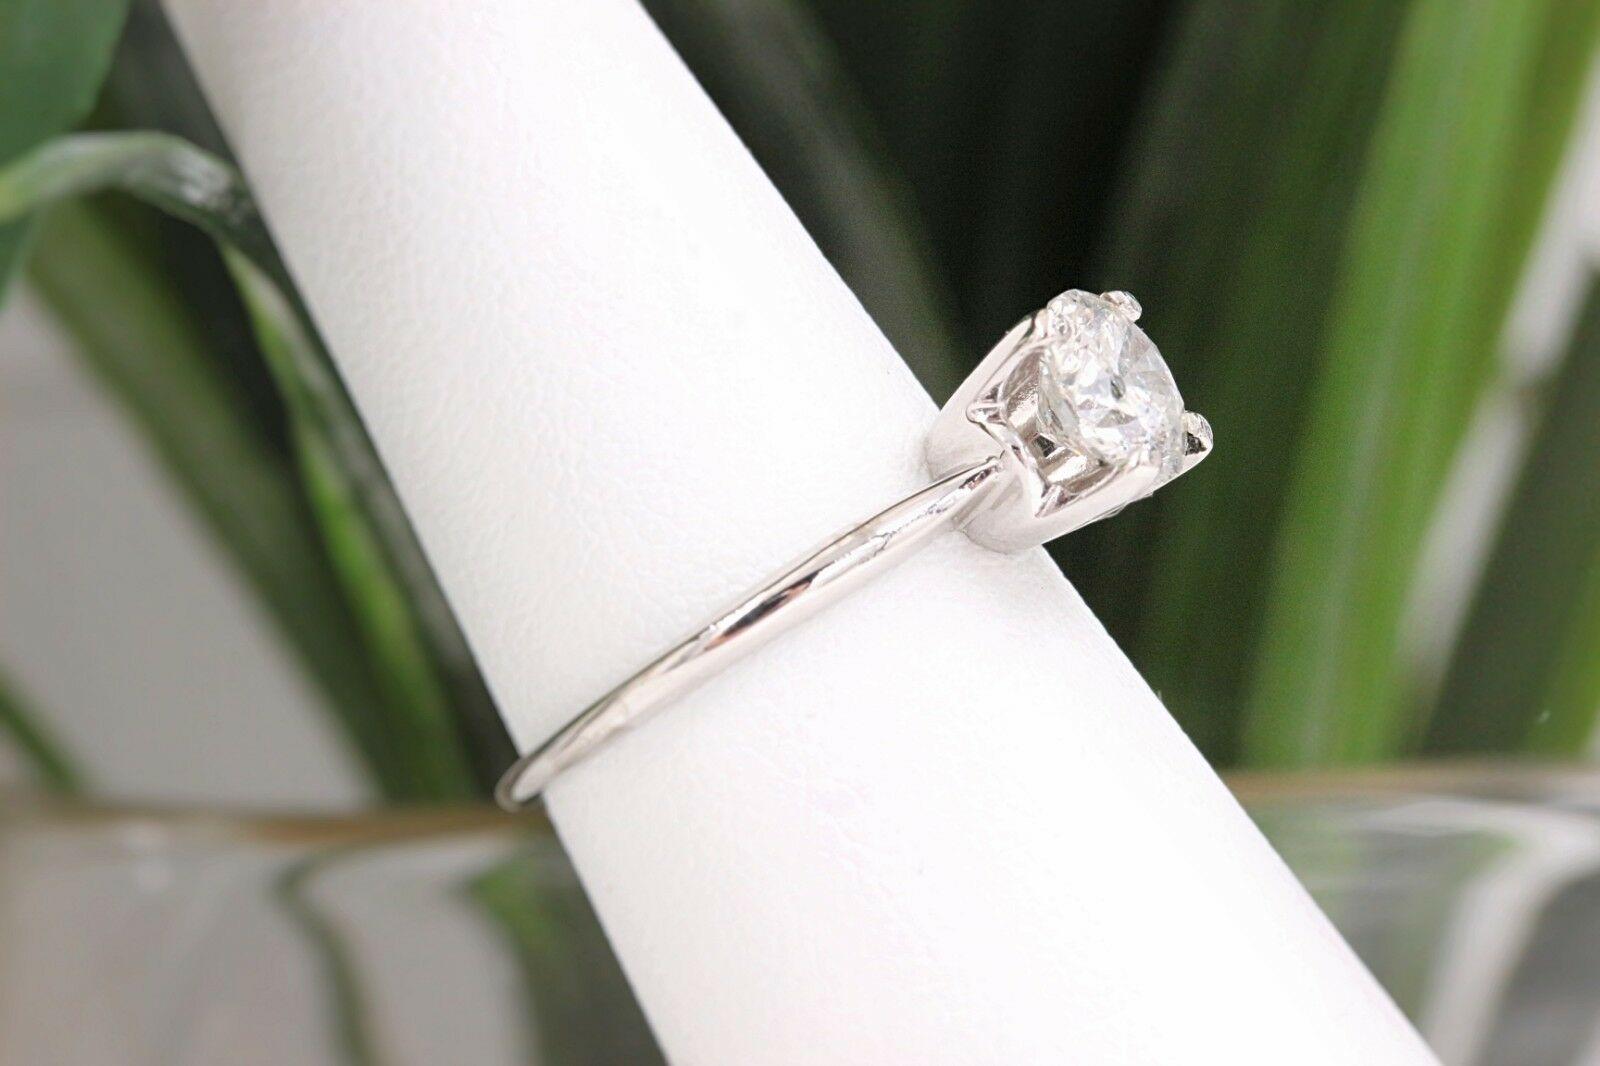 14 carat diamond ring price